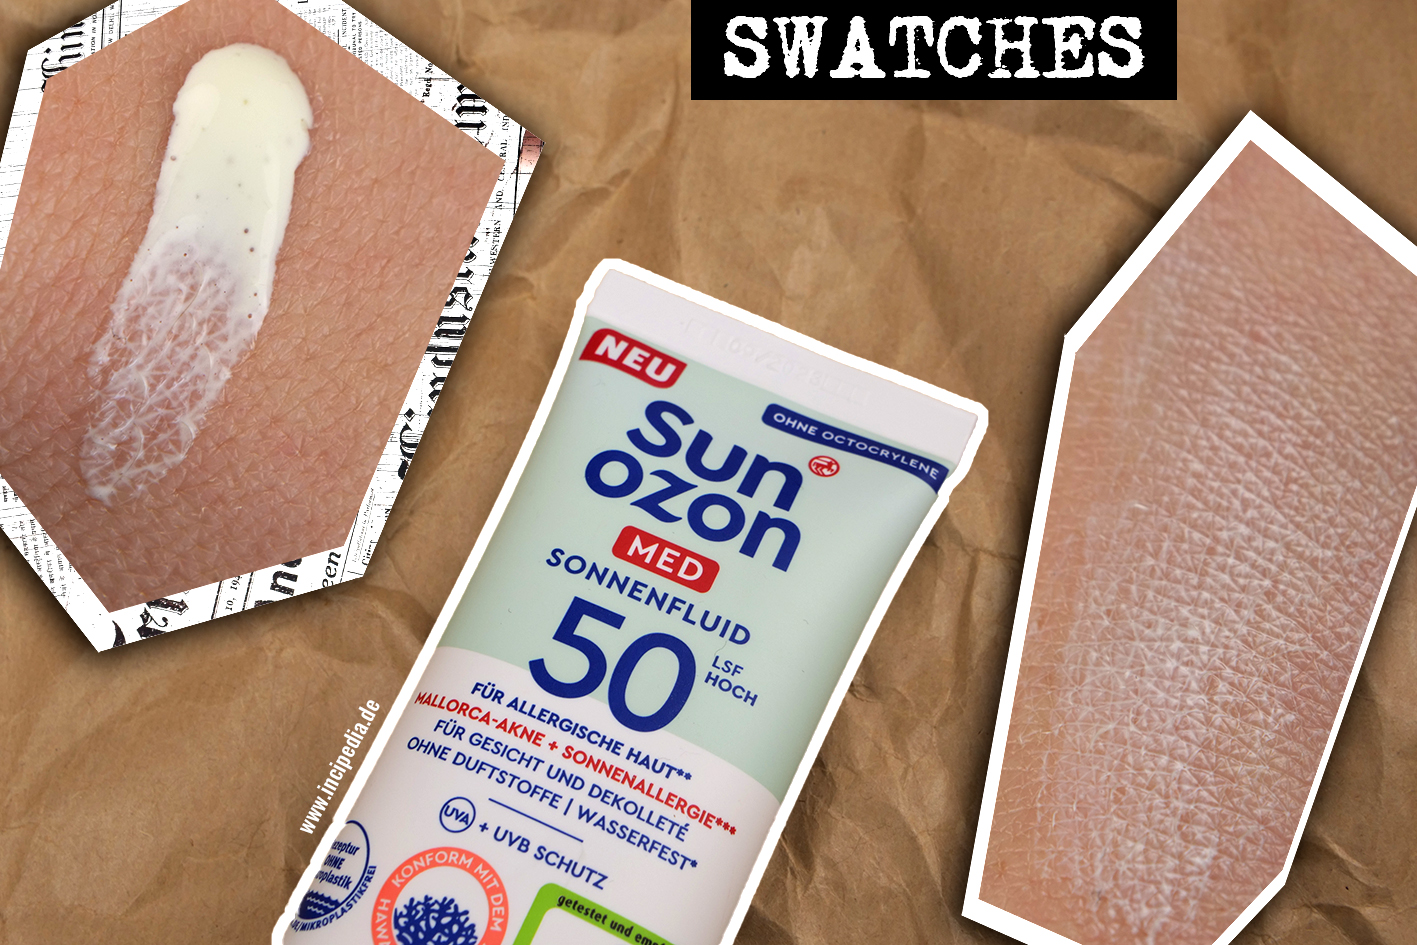 Sunozon Med Sonnenfluid SPF 50 Swatches